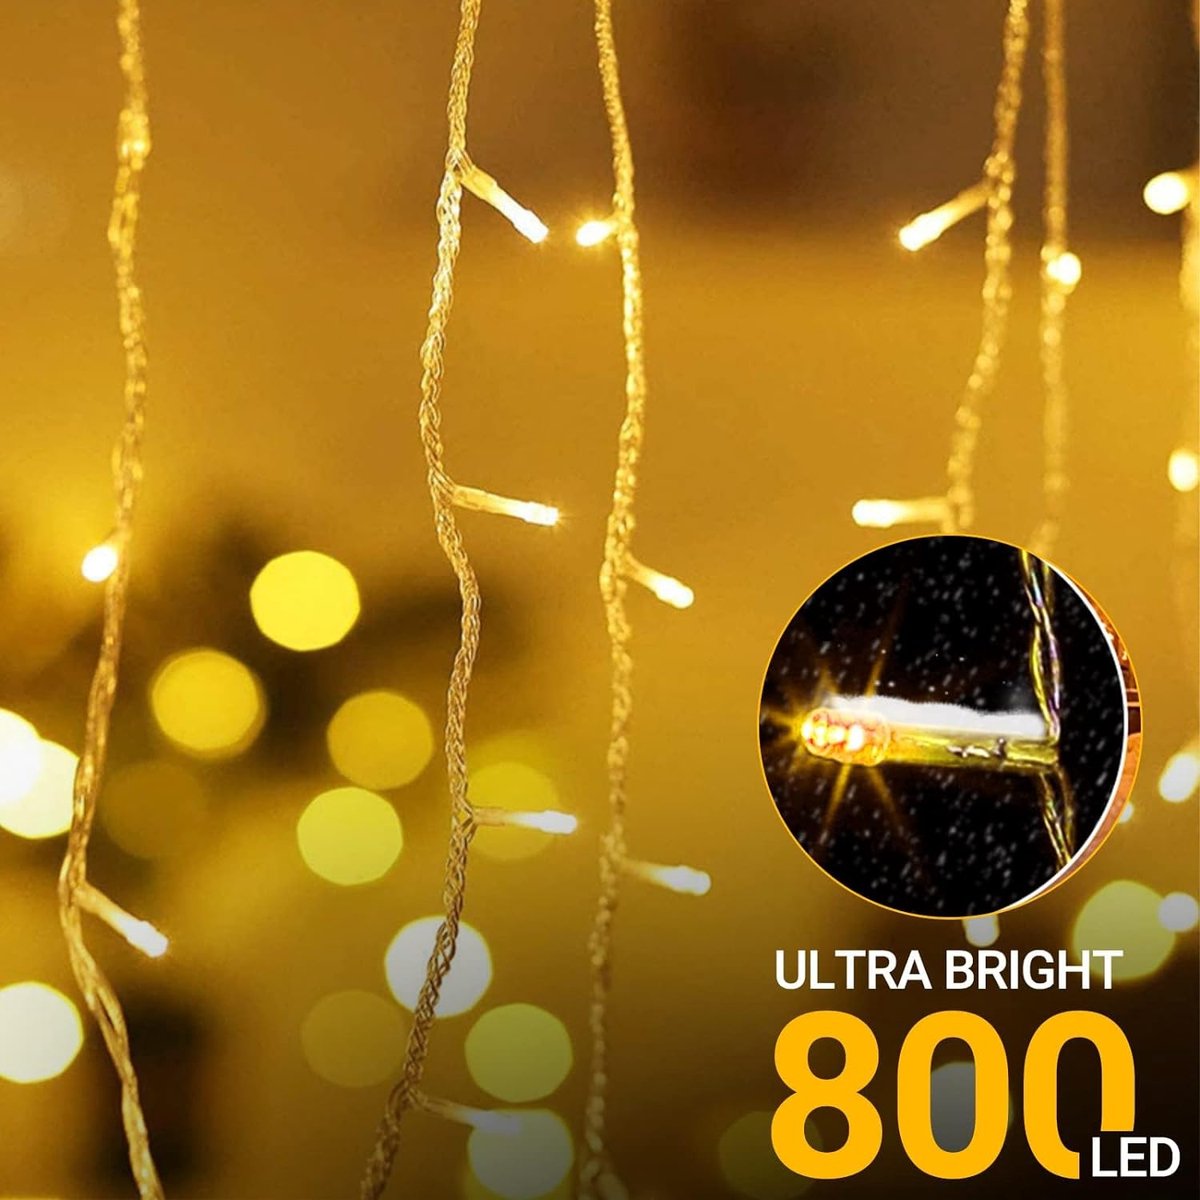 Guirlande lumineuse d'extérieur,Rideau lumineux 6 m x 3 m 600 LED